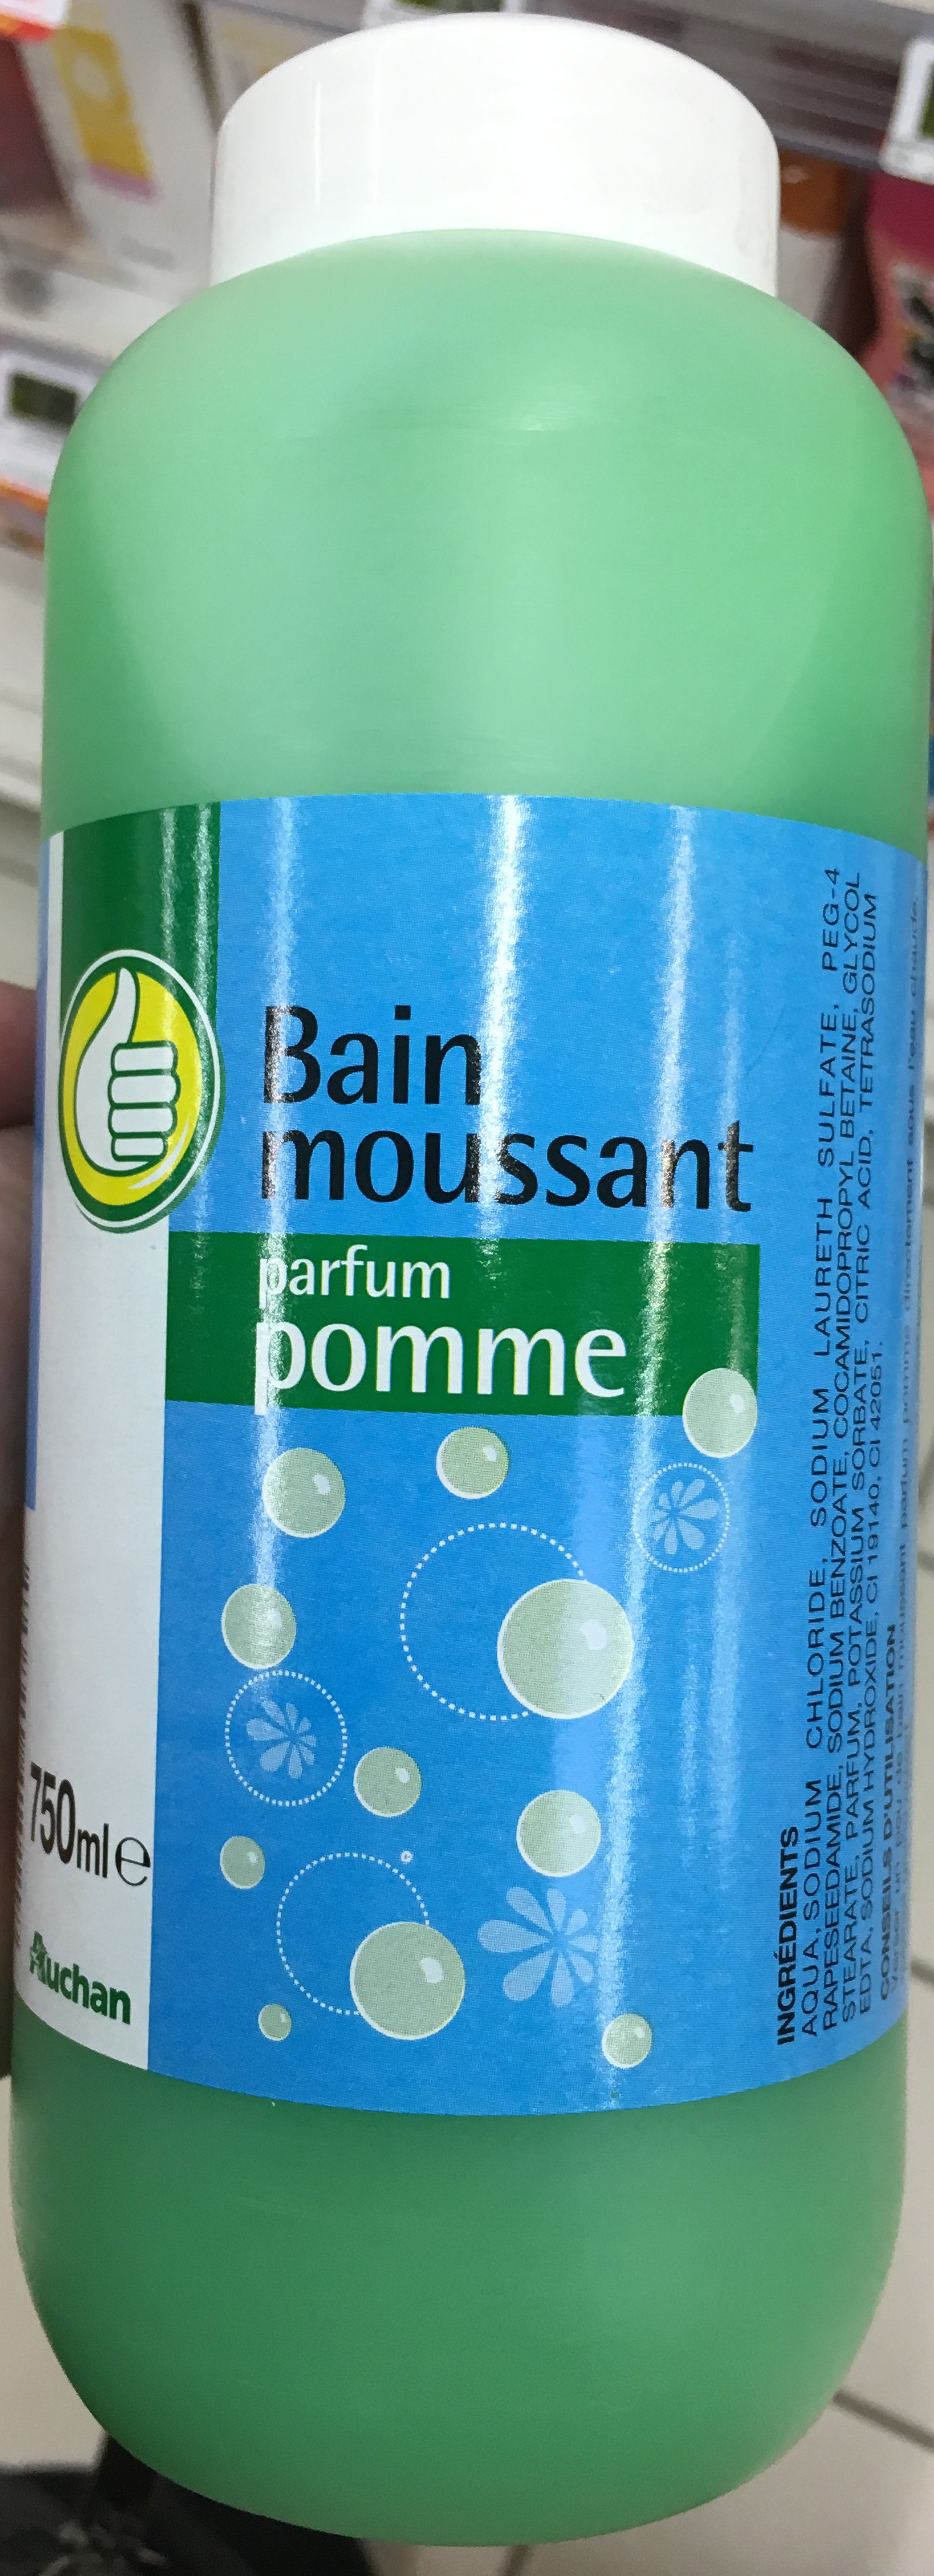 Bain moussant parfum pomme - Product - fr